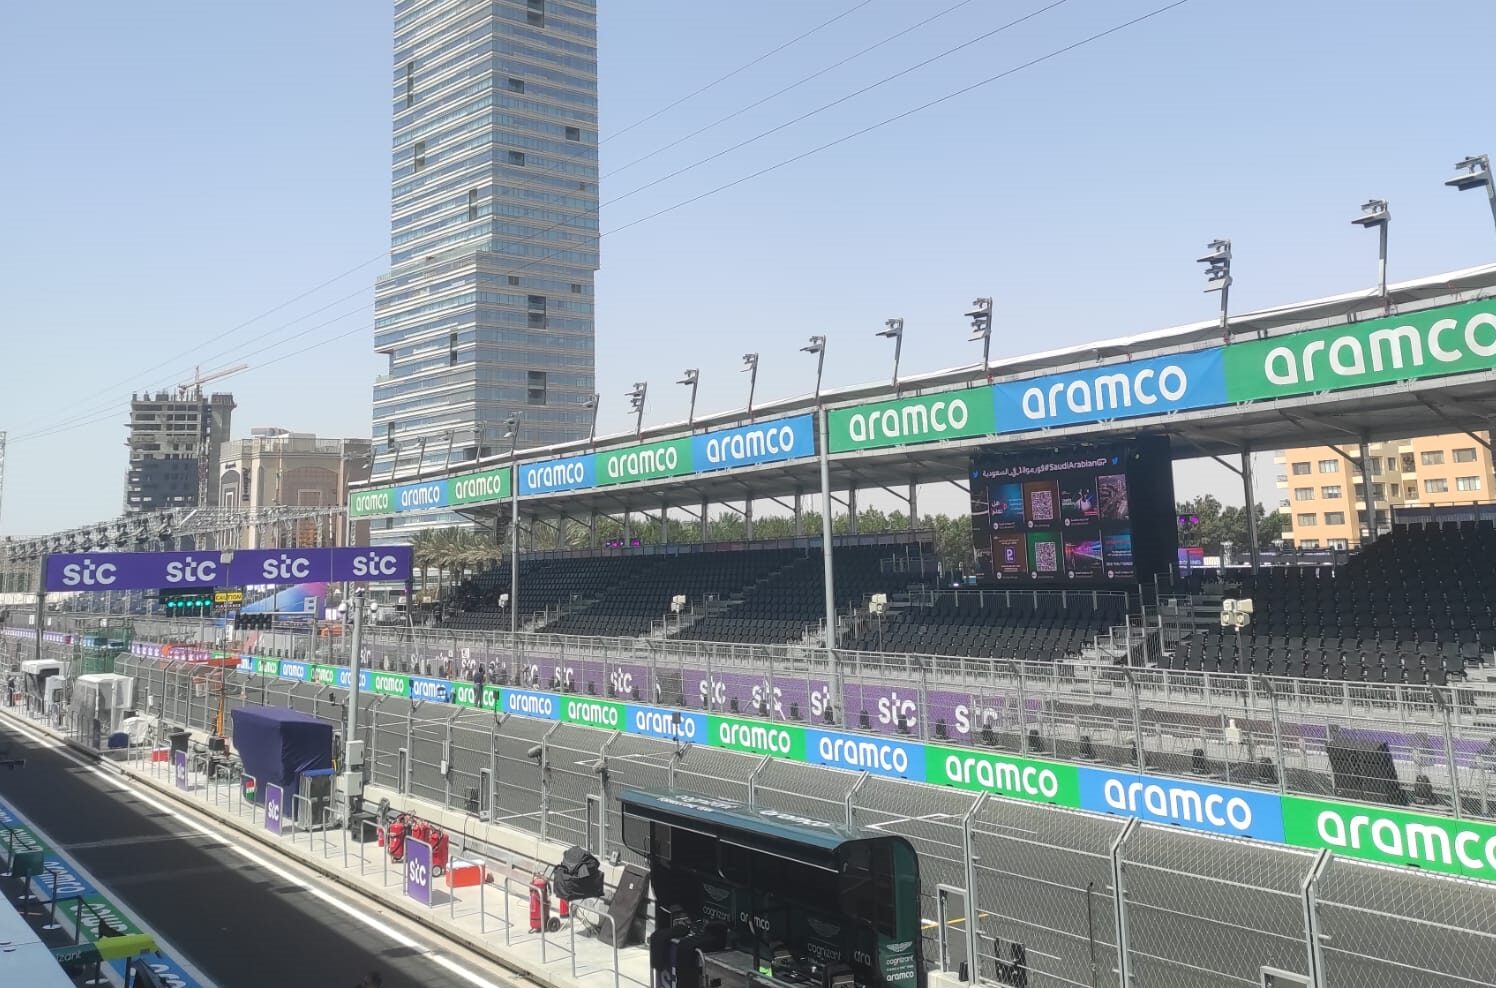 Vista desde el paddock de la tribuna principal situada en la línea de meta, con Aramco como patrocinador